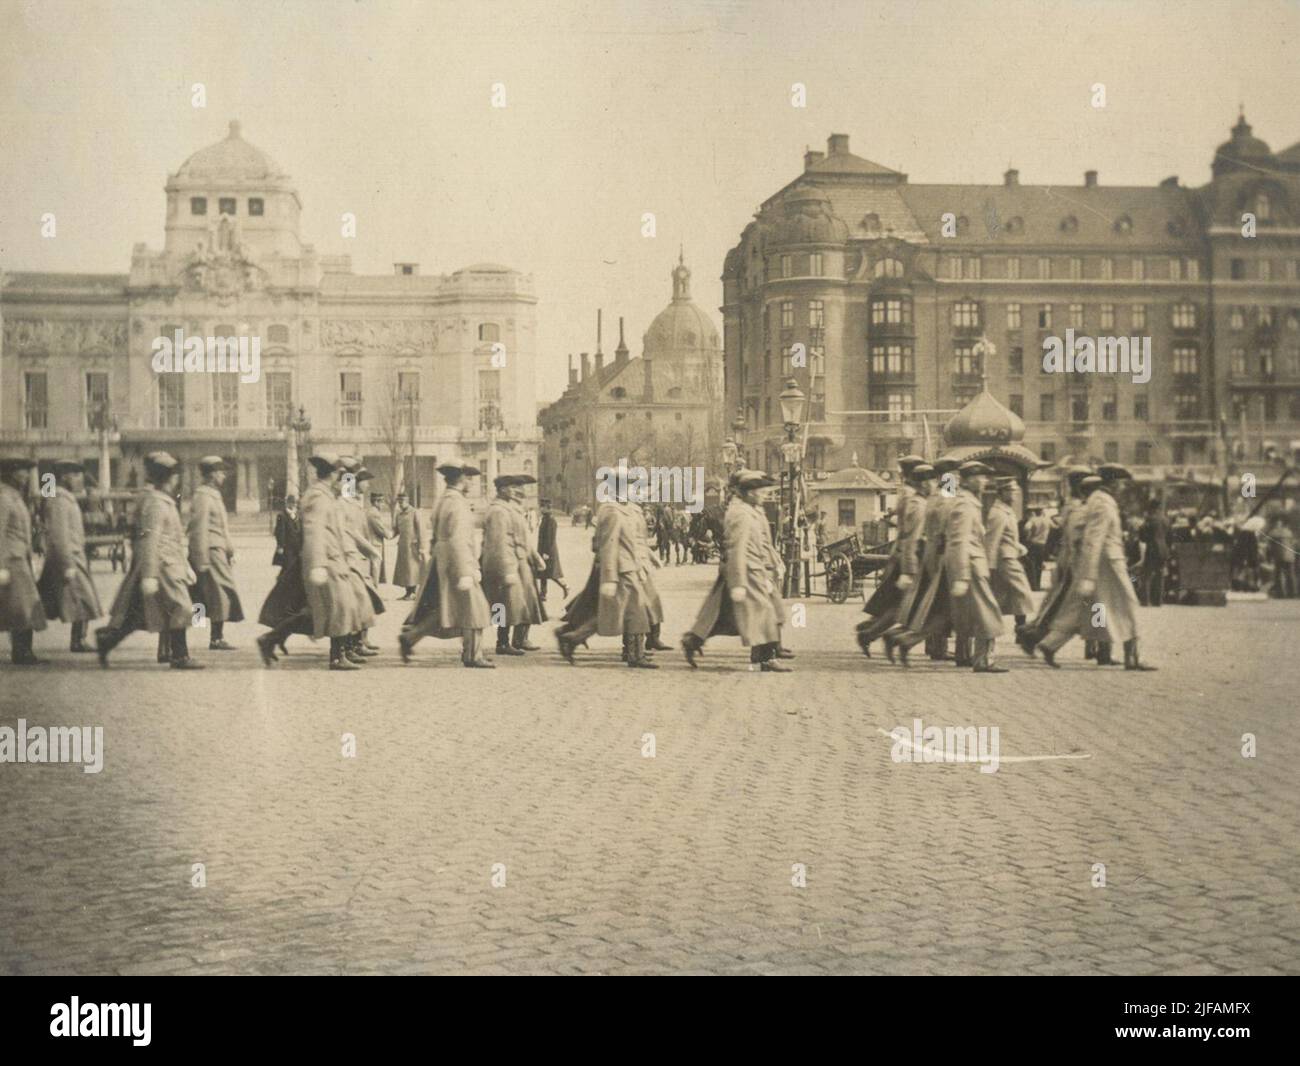 Soldaten der CFFICERSCUSEN 1916-1917 an der Militäruniversität Karlberg marschiert gegen Nybrokajen. Das Royal Dramatic Theatre ist im Hintergrund zu sehen - Dramaten. Stockfoto